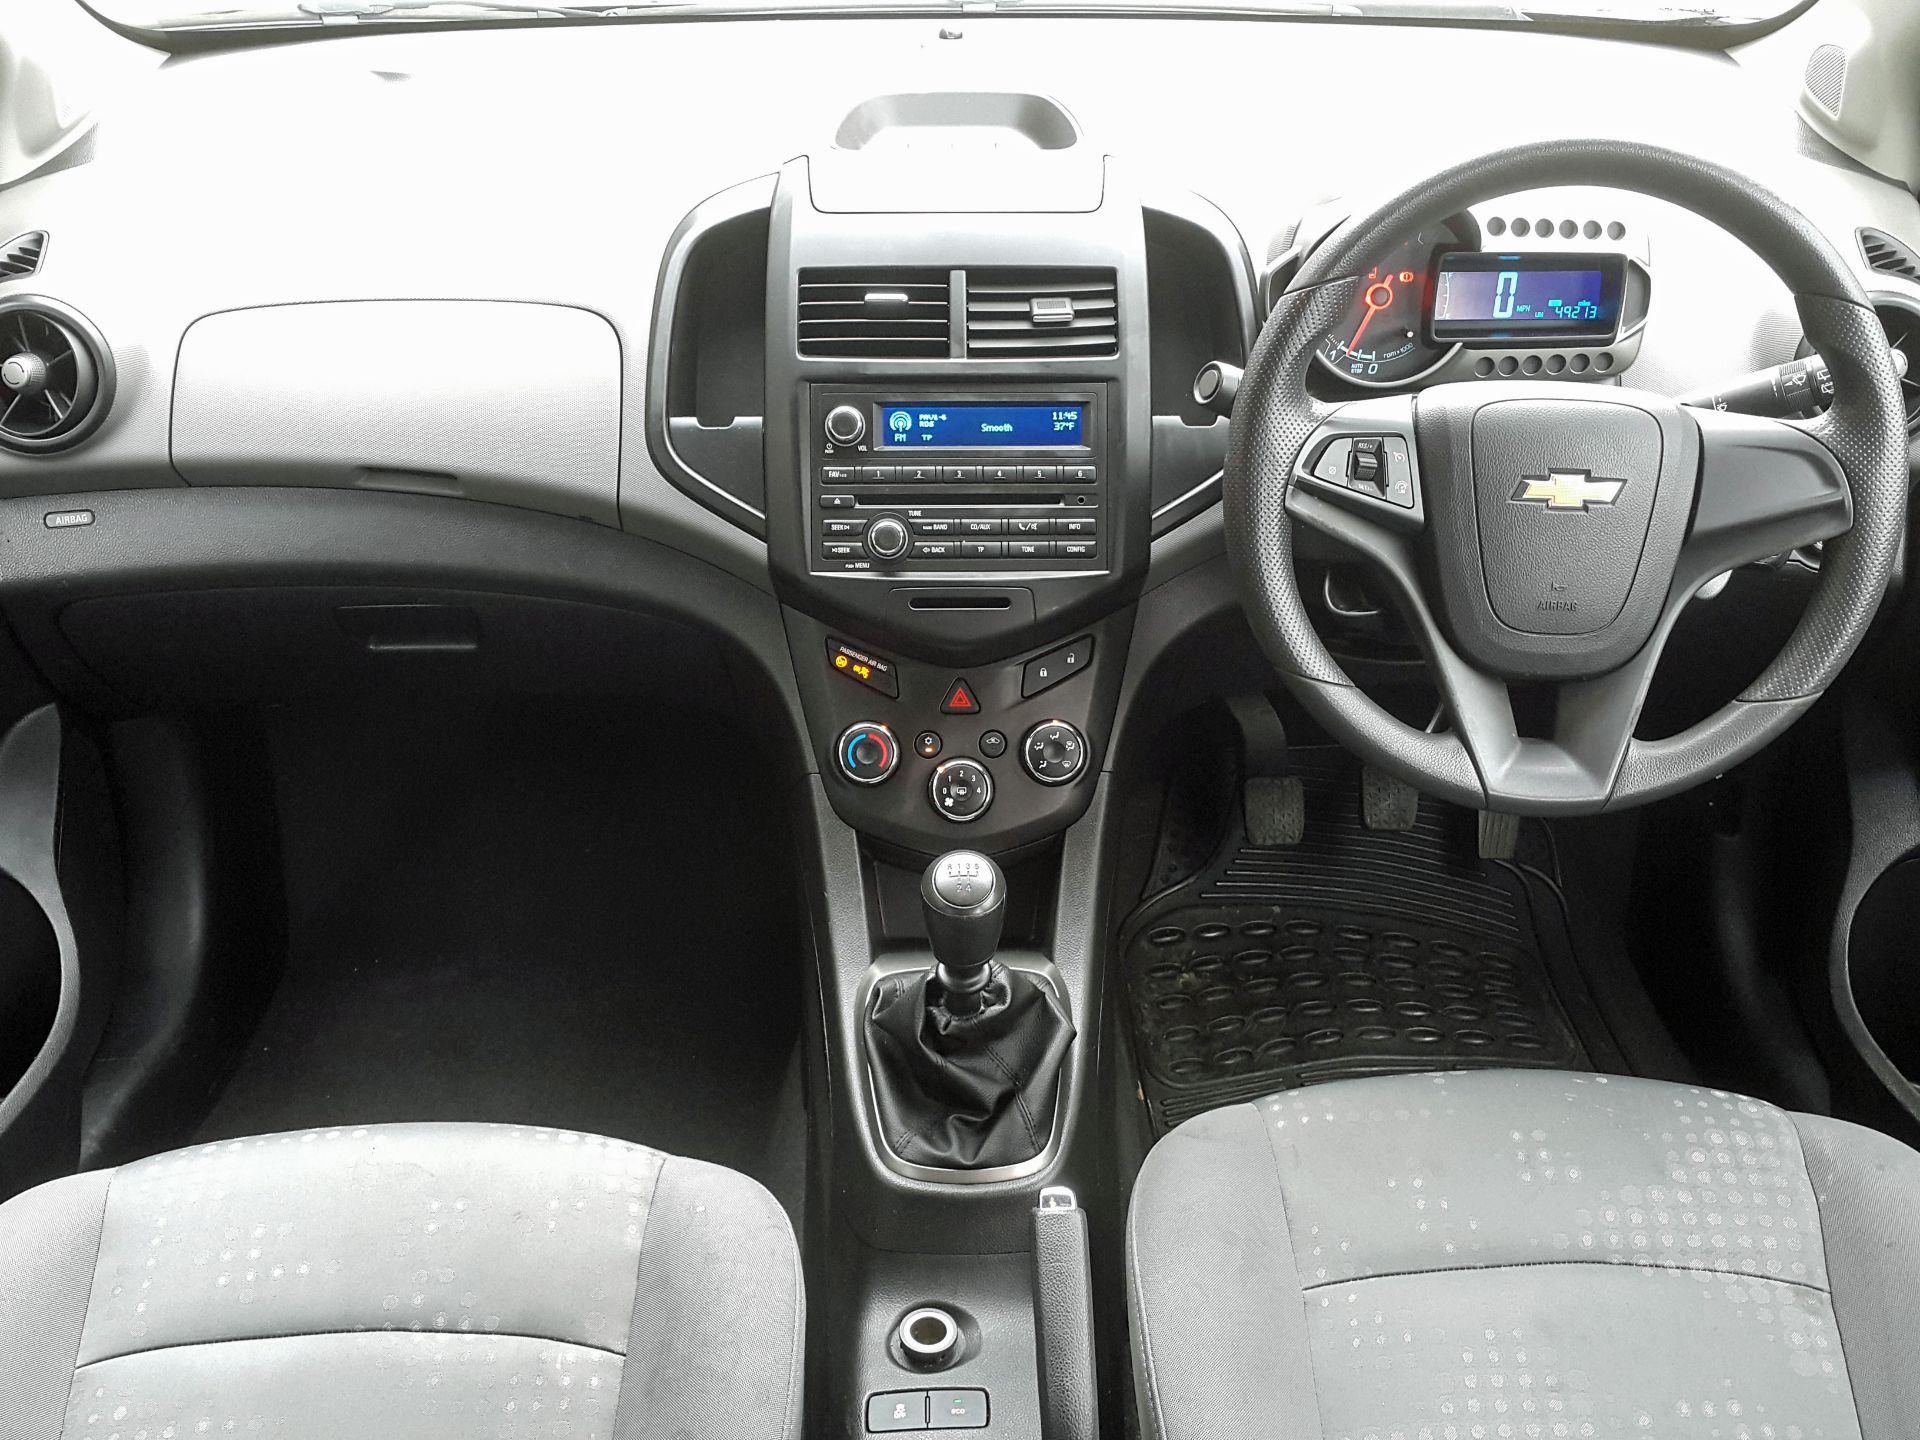 Chevrolet Aveo 1.2LS (S/S) 5 Door 2012 (62 Reg), Only 49000 Miles, Full Service History - Image 9 of 18